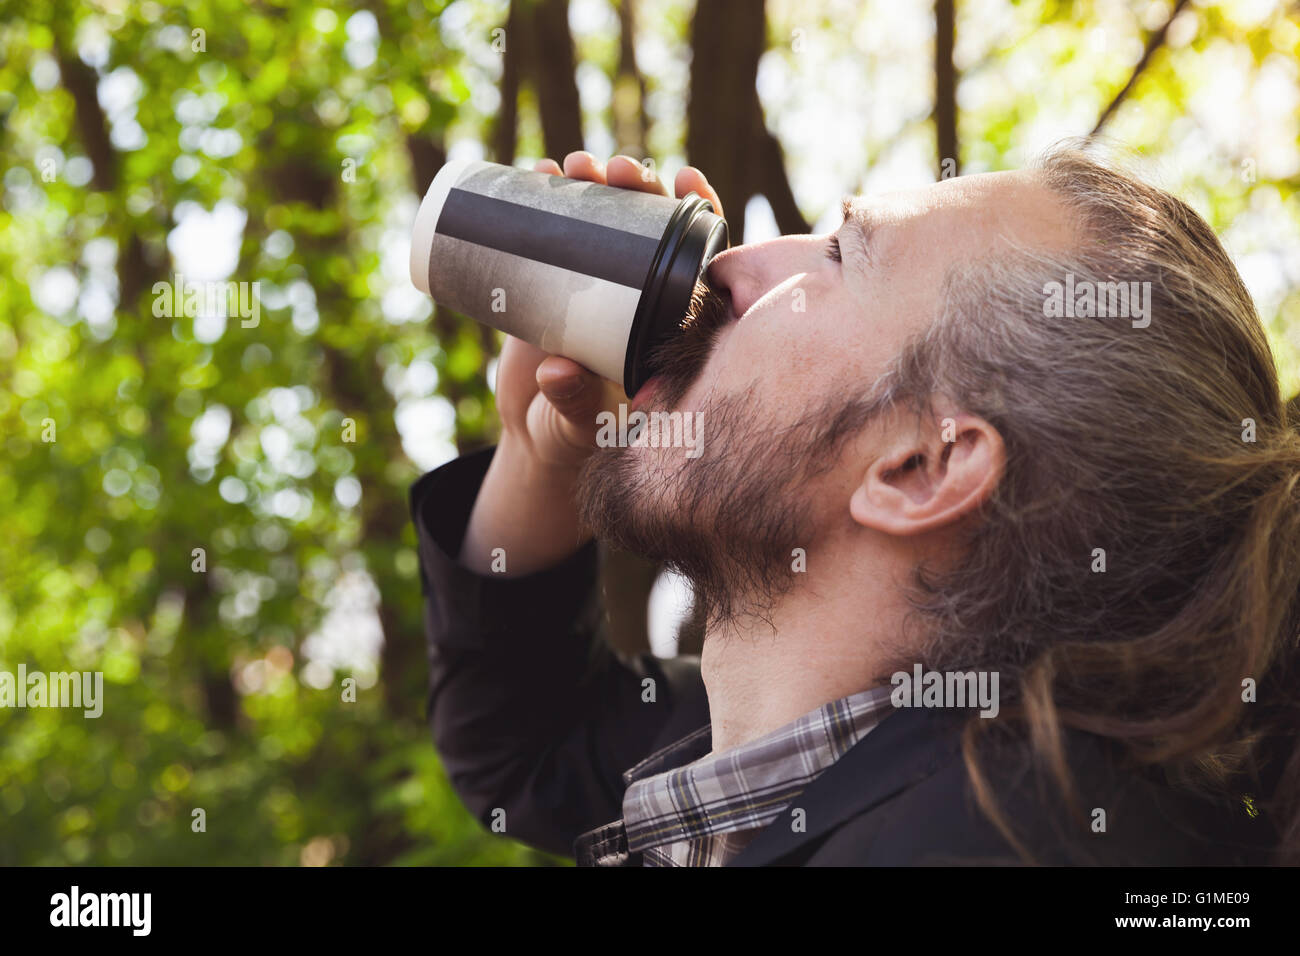 Asiatische bärtige Kaffeetrinken aus Pappbecher im Sommerpark, outdoor Closeup Profilbildnis mit selektiven Fokus Stockfoto